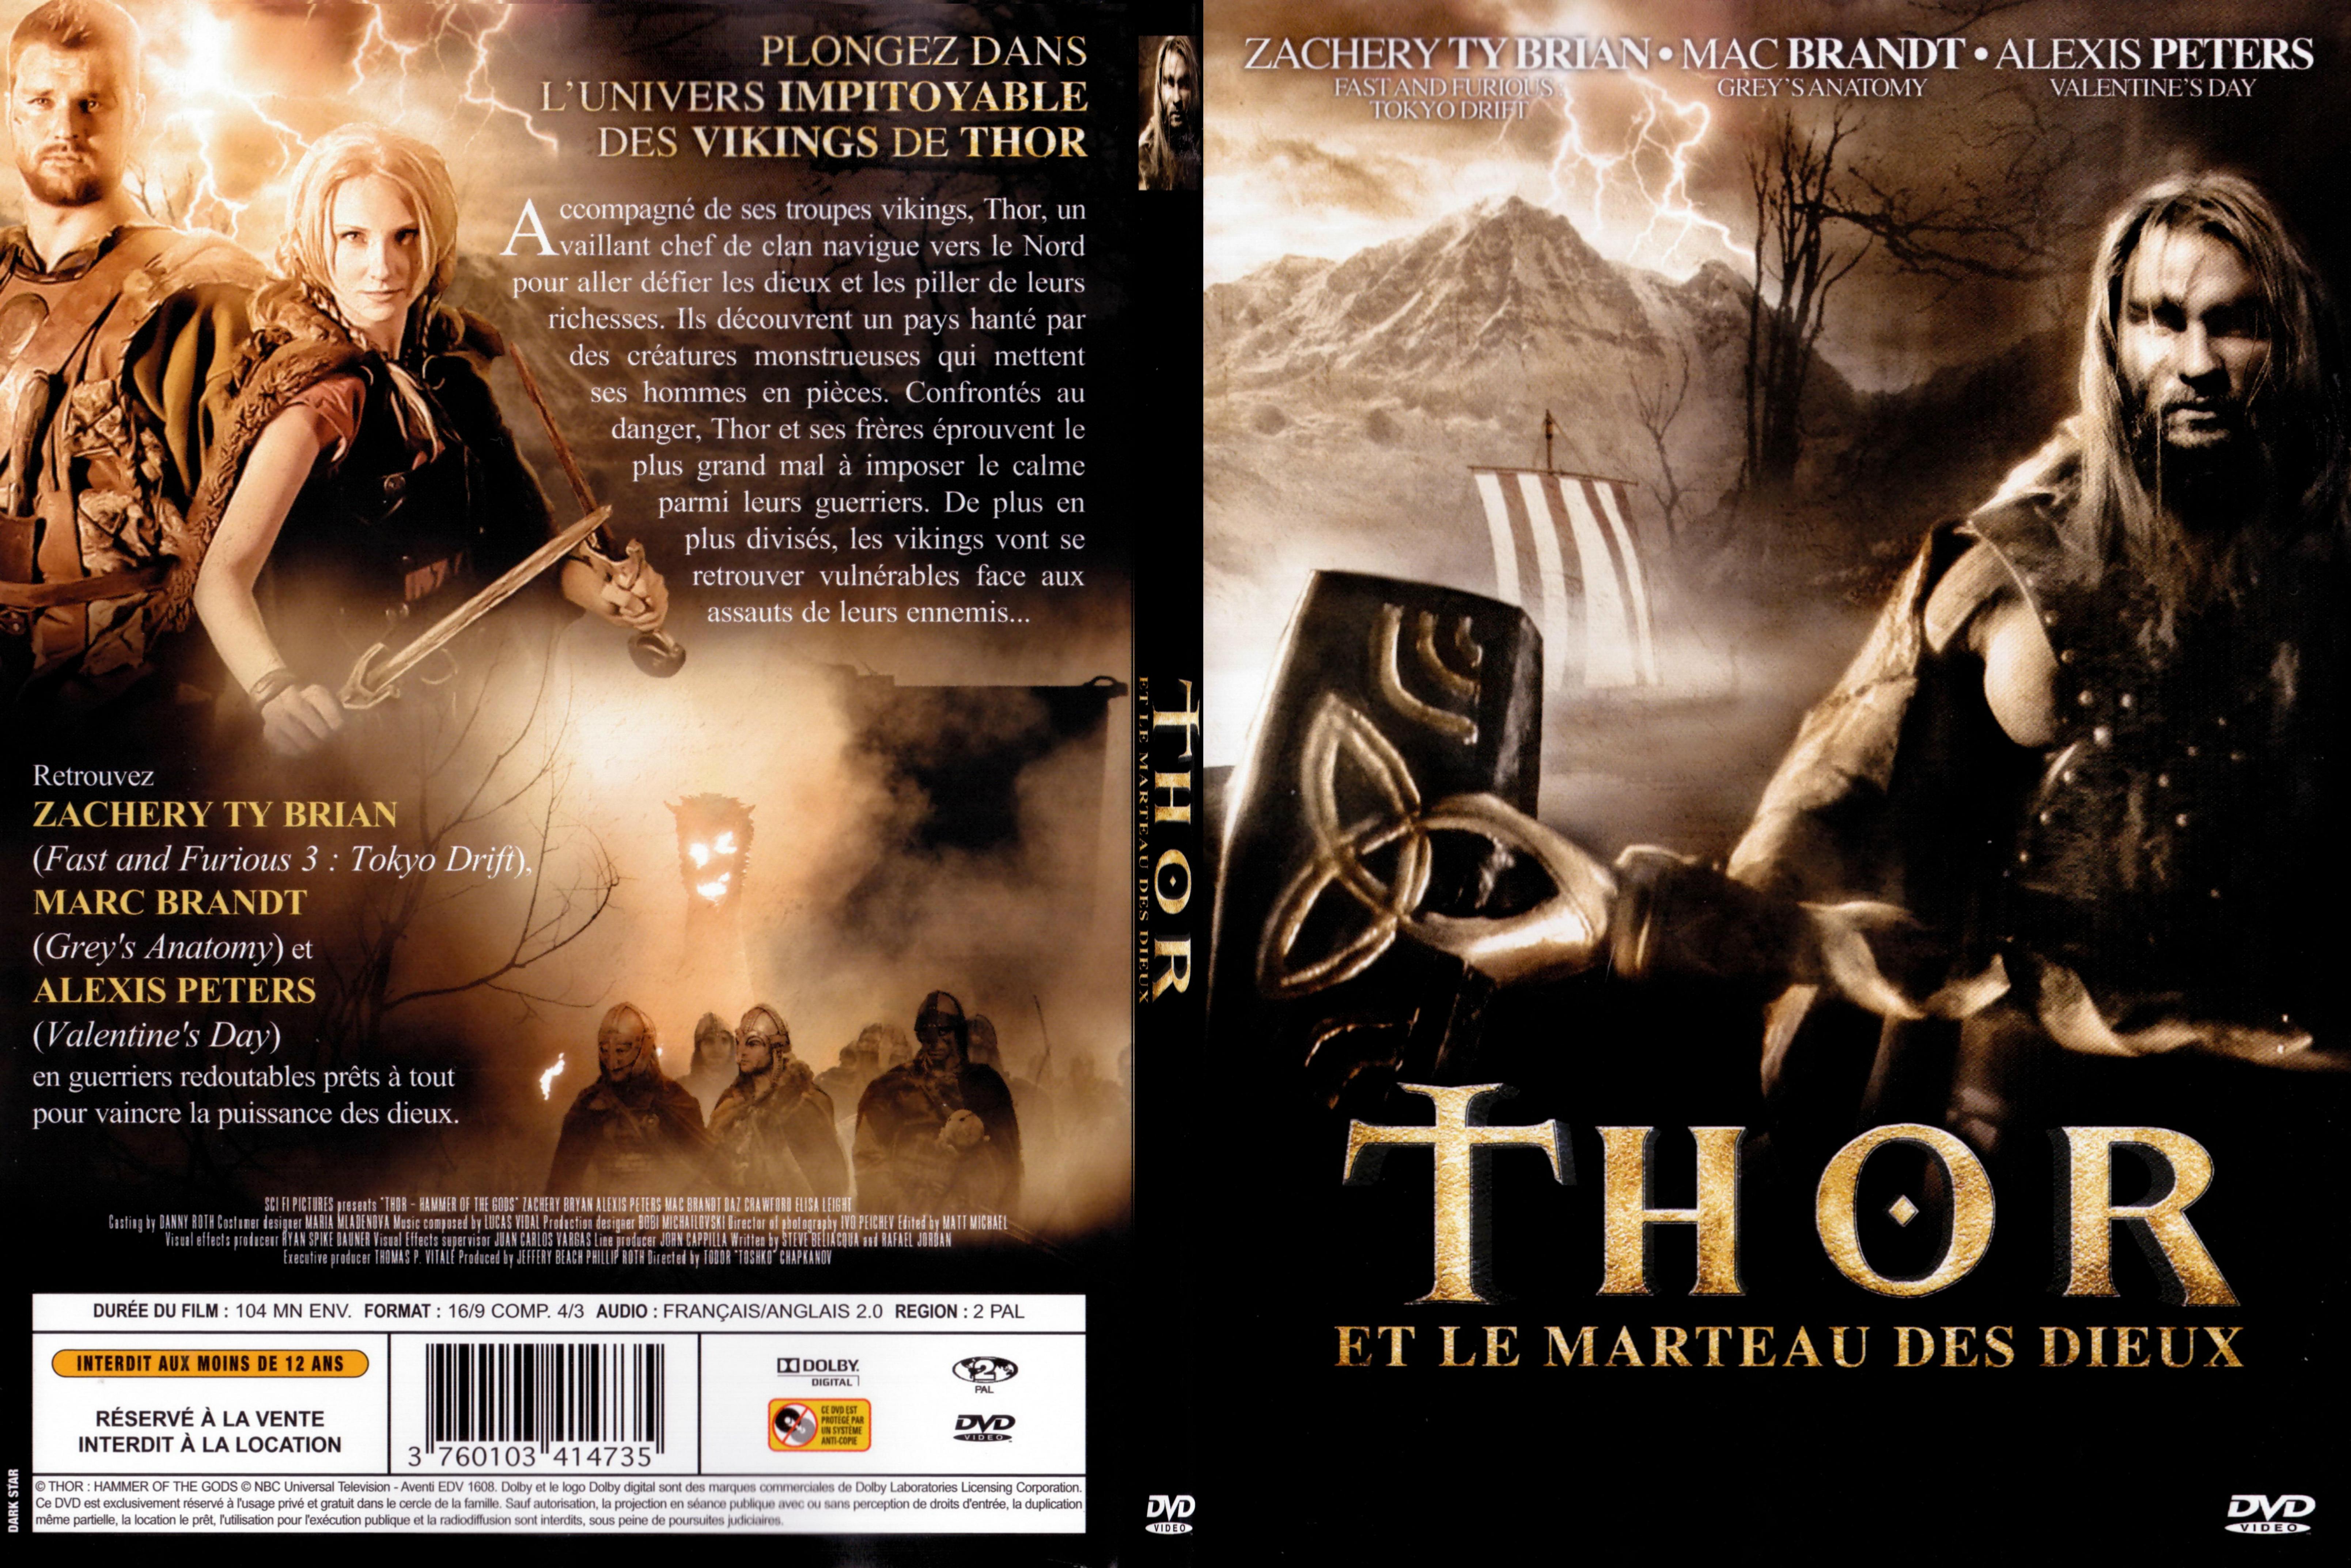 Jaquette DVD Thor et le marteau des dieux - SLIM